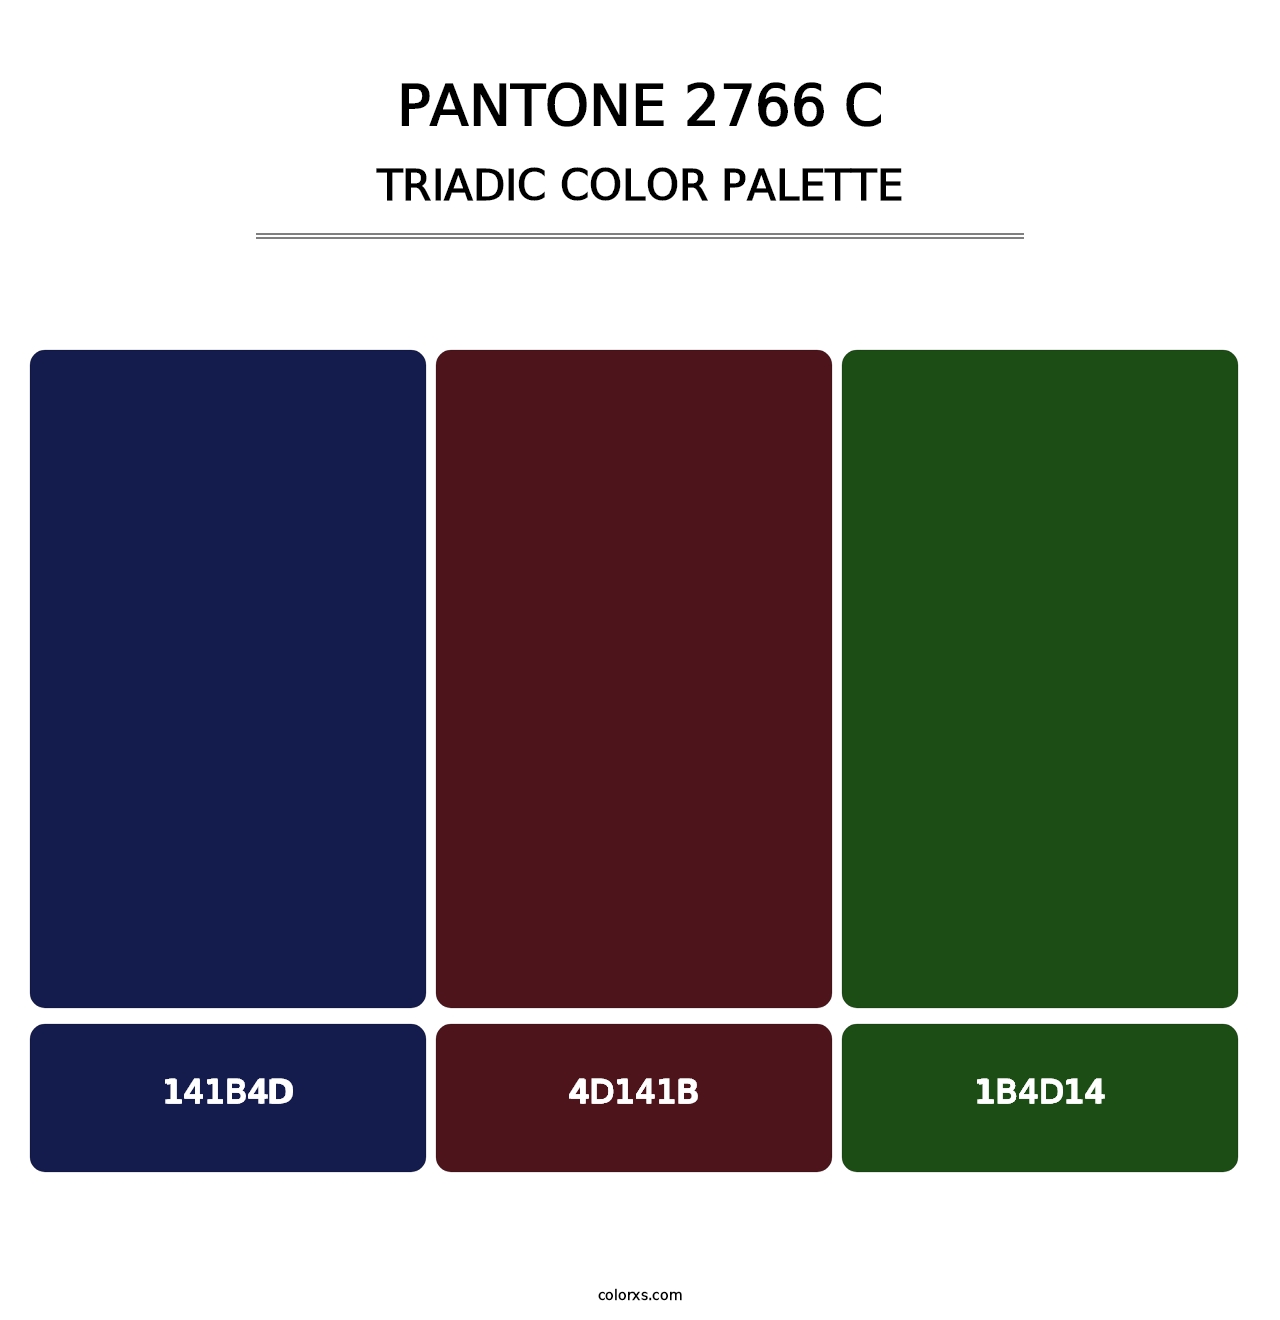 PANTONE 2766 C - Triadic Color Palette